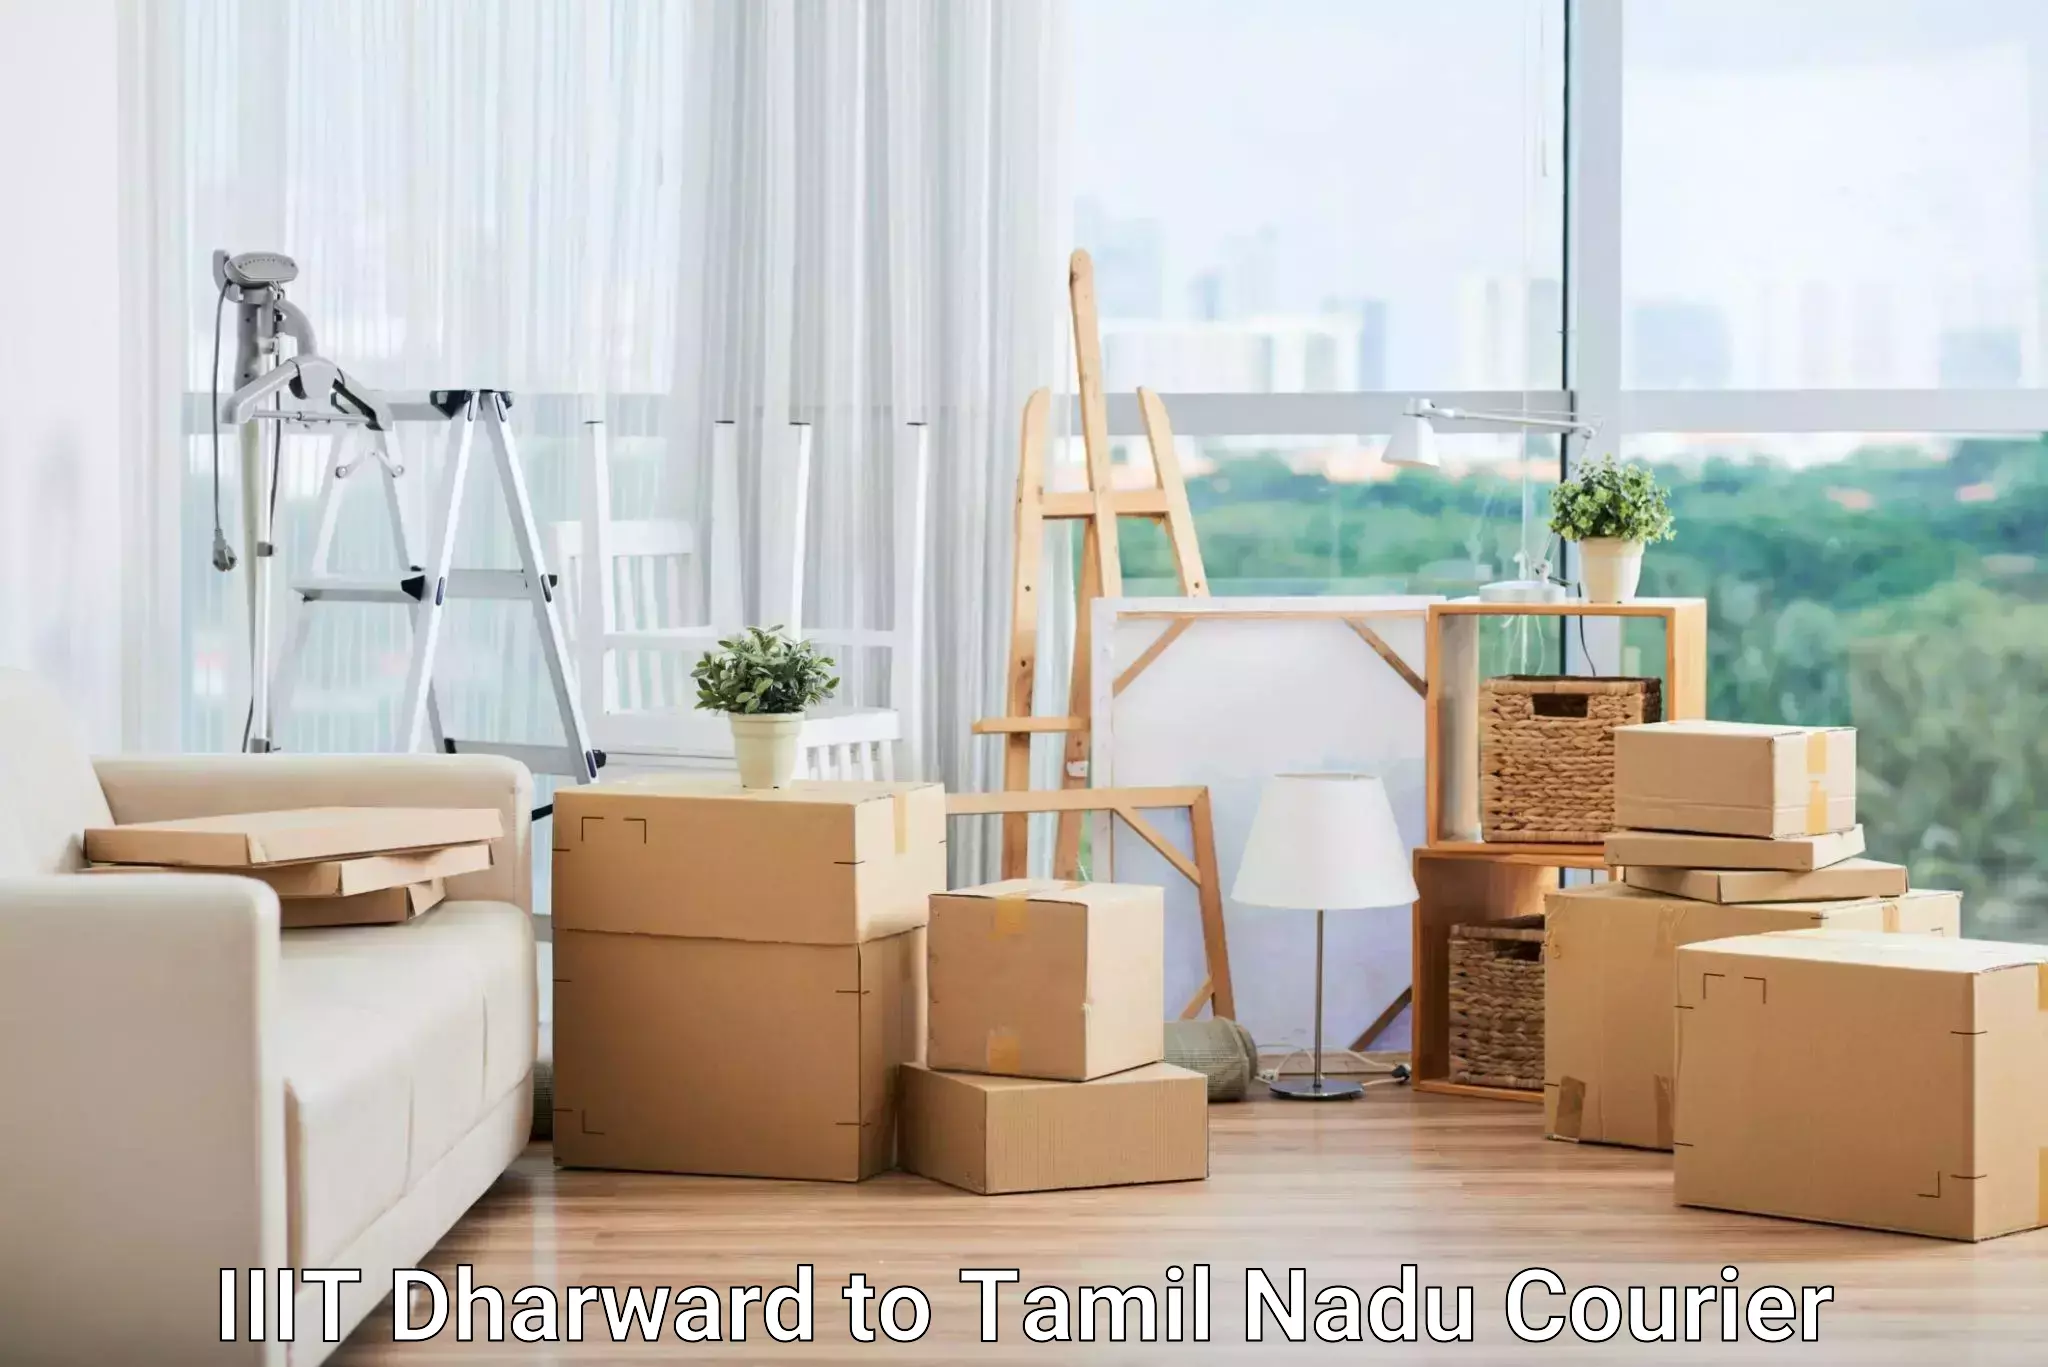 Tech-enabled shipping IIIT Dharward to Tamil Nadu